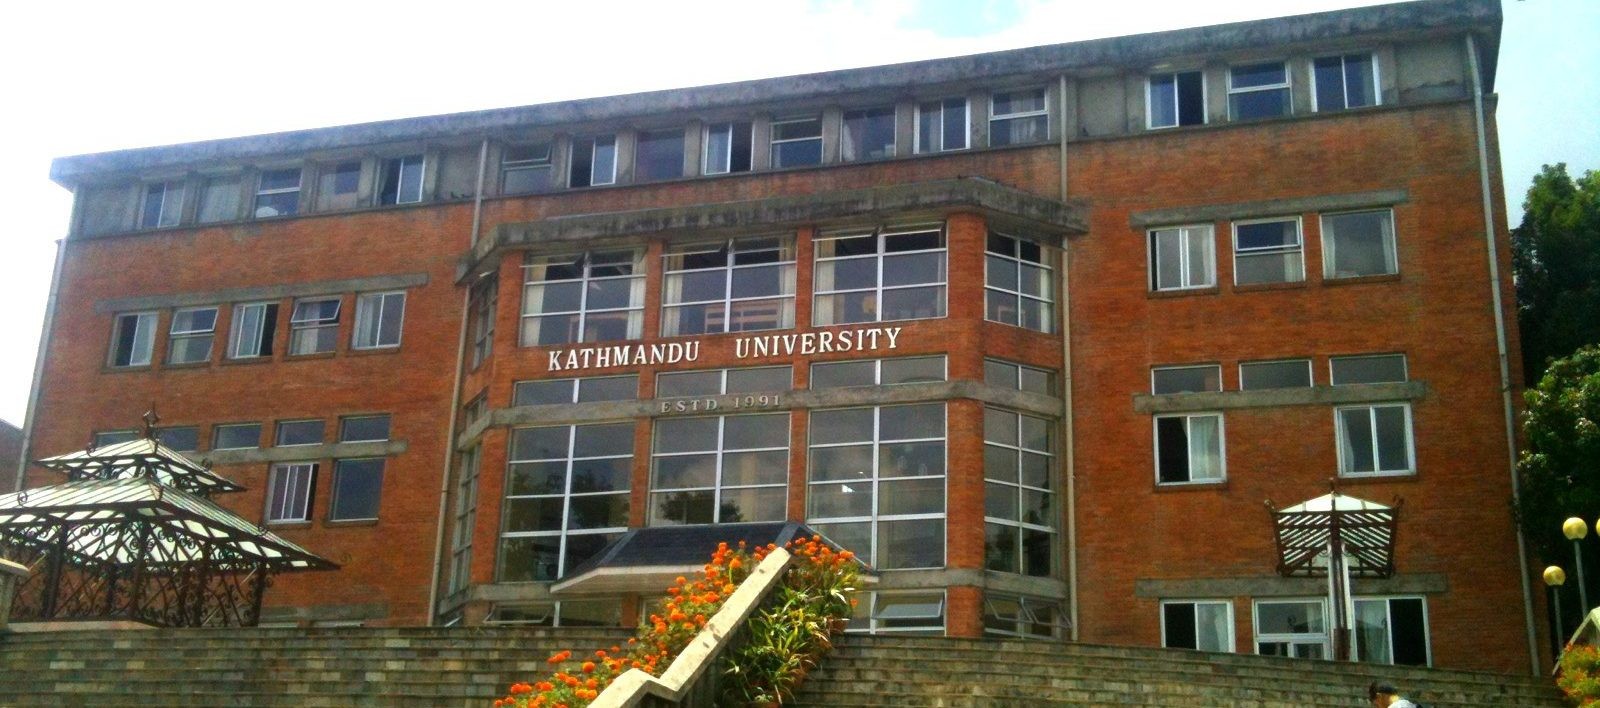 काठमाडौं विश्वविद्यालयको उपकुलपतिका लागि शिक्षा मन्त्रीको निजी इमेलमा दरखास्त दिनुपर्ने!